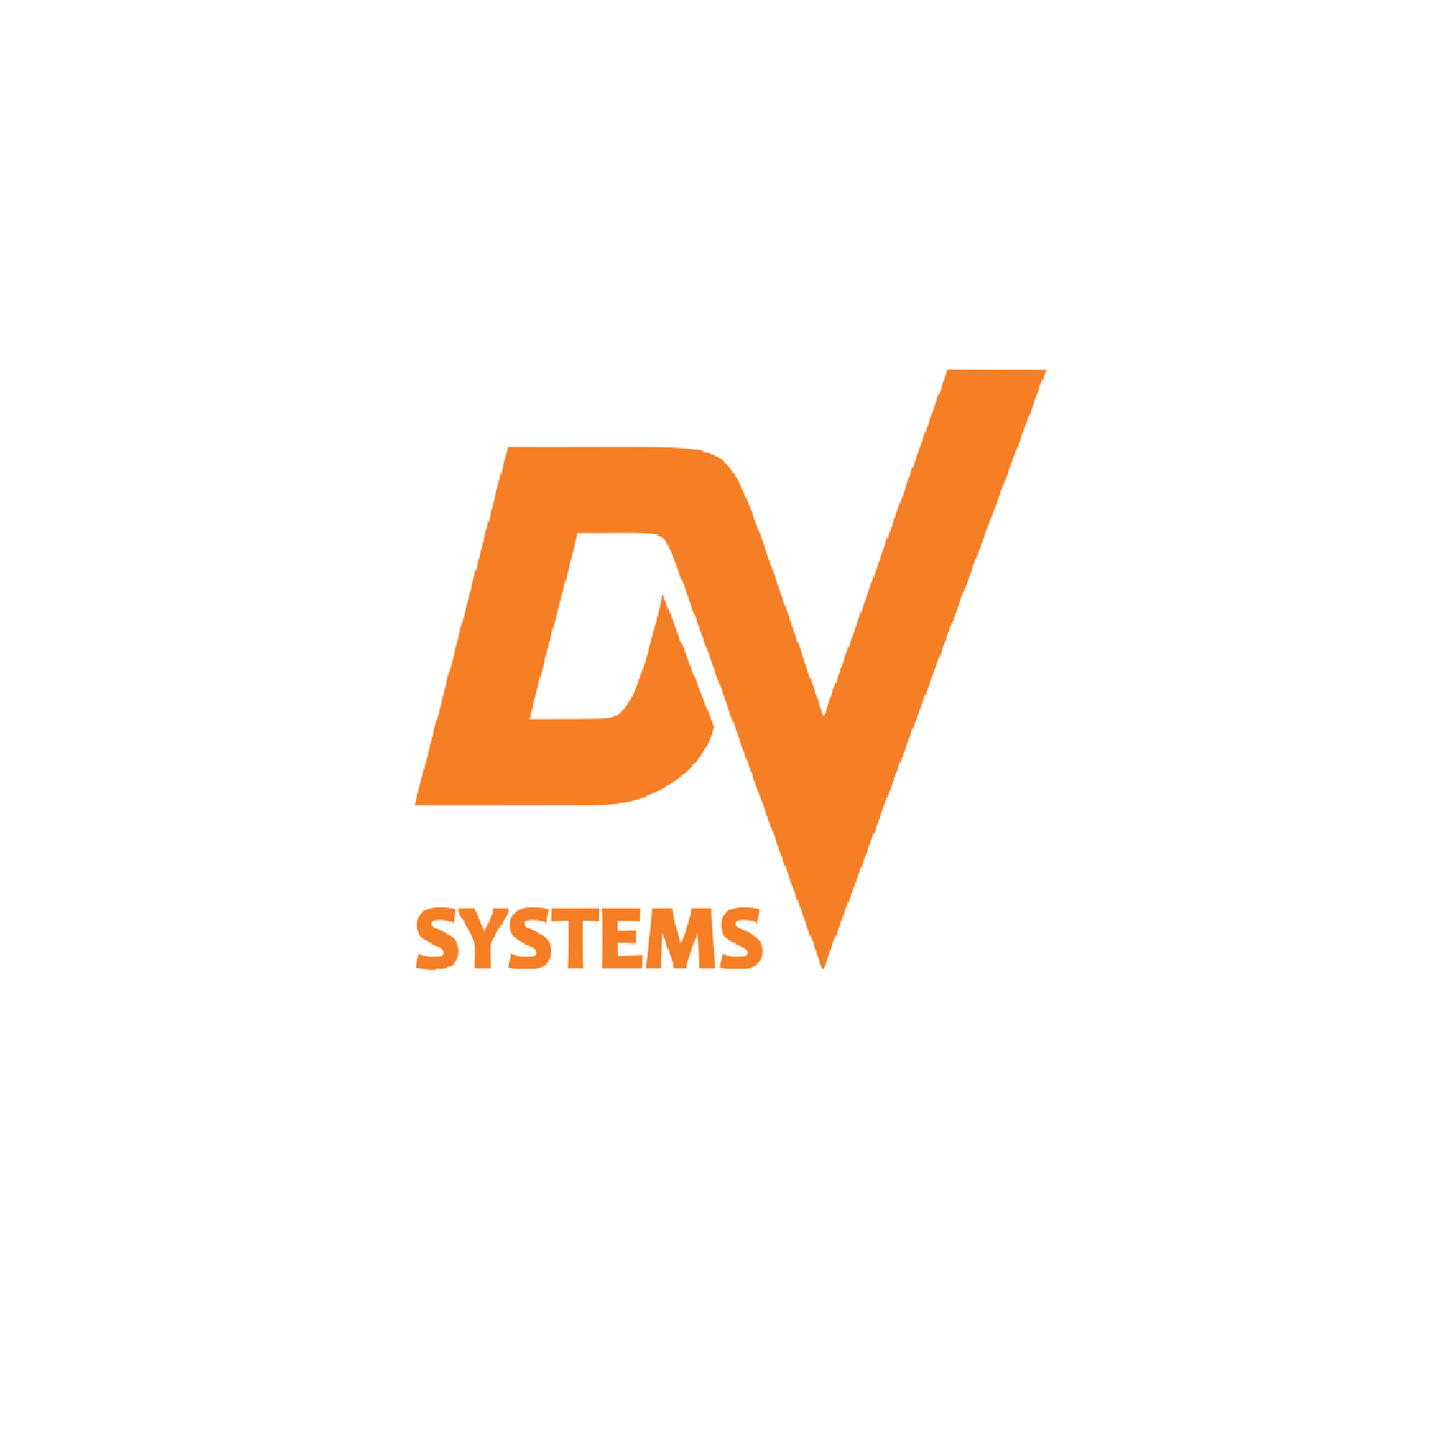 Dsc-001774 inverter 30hp 460v dv systems